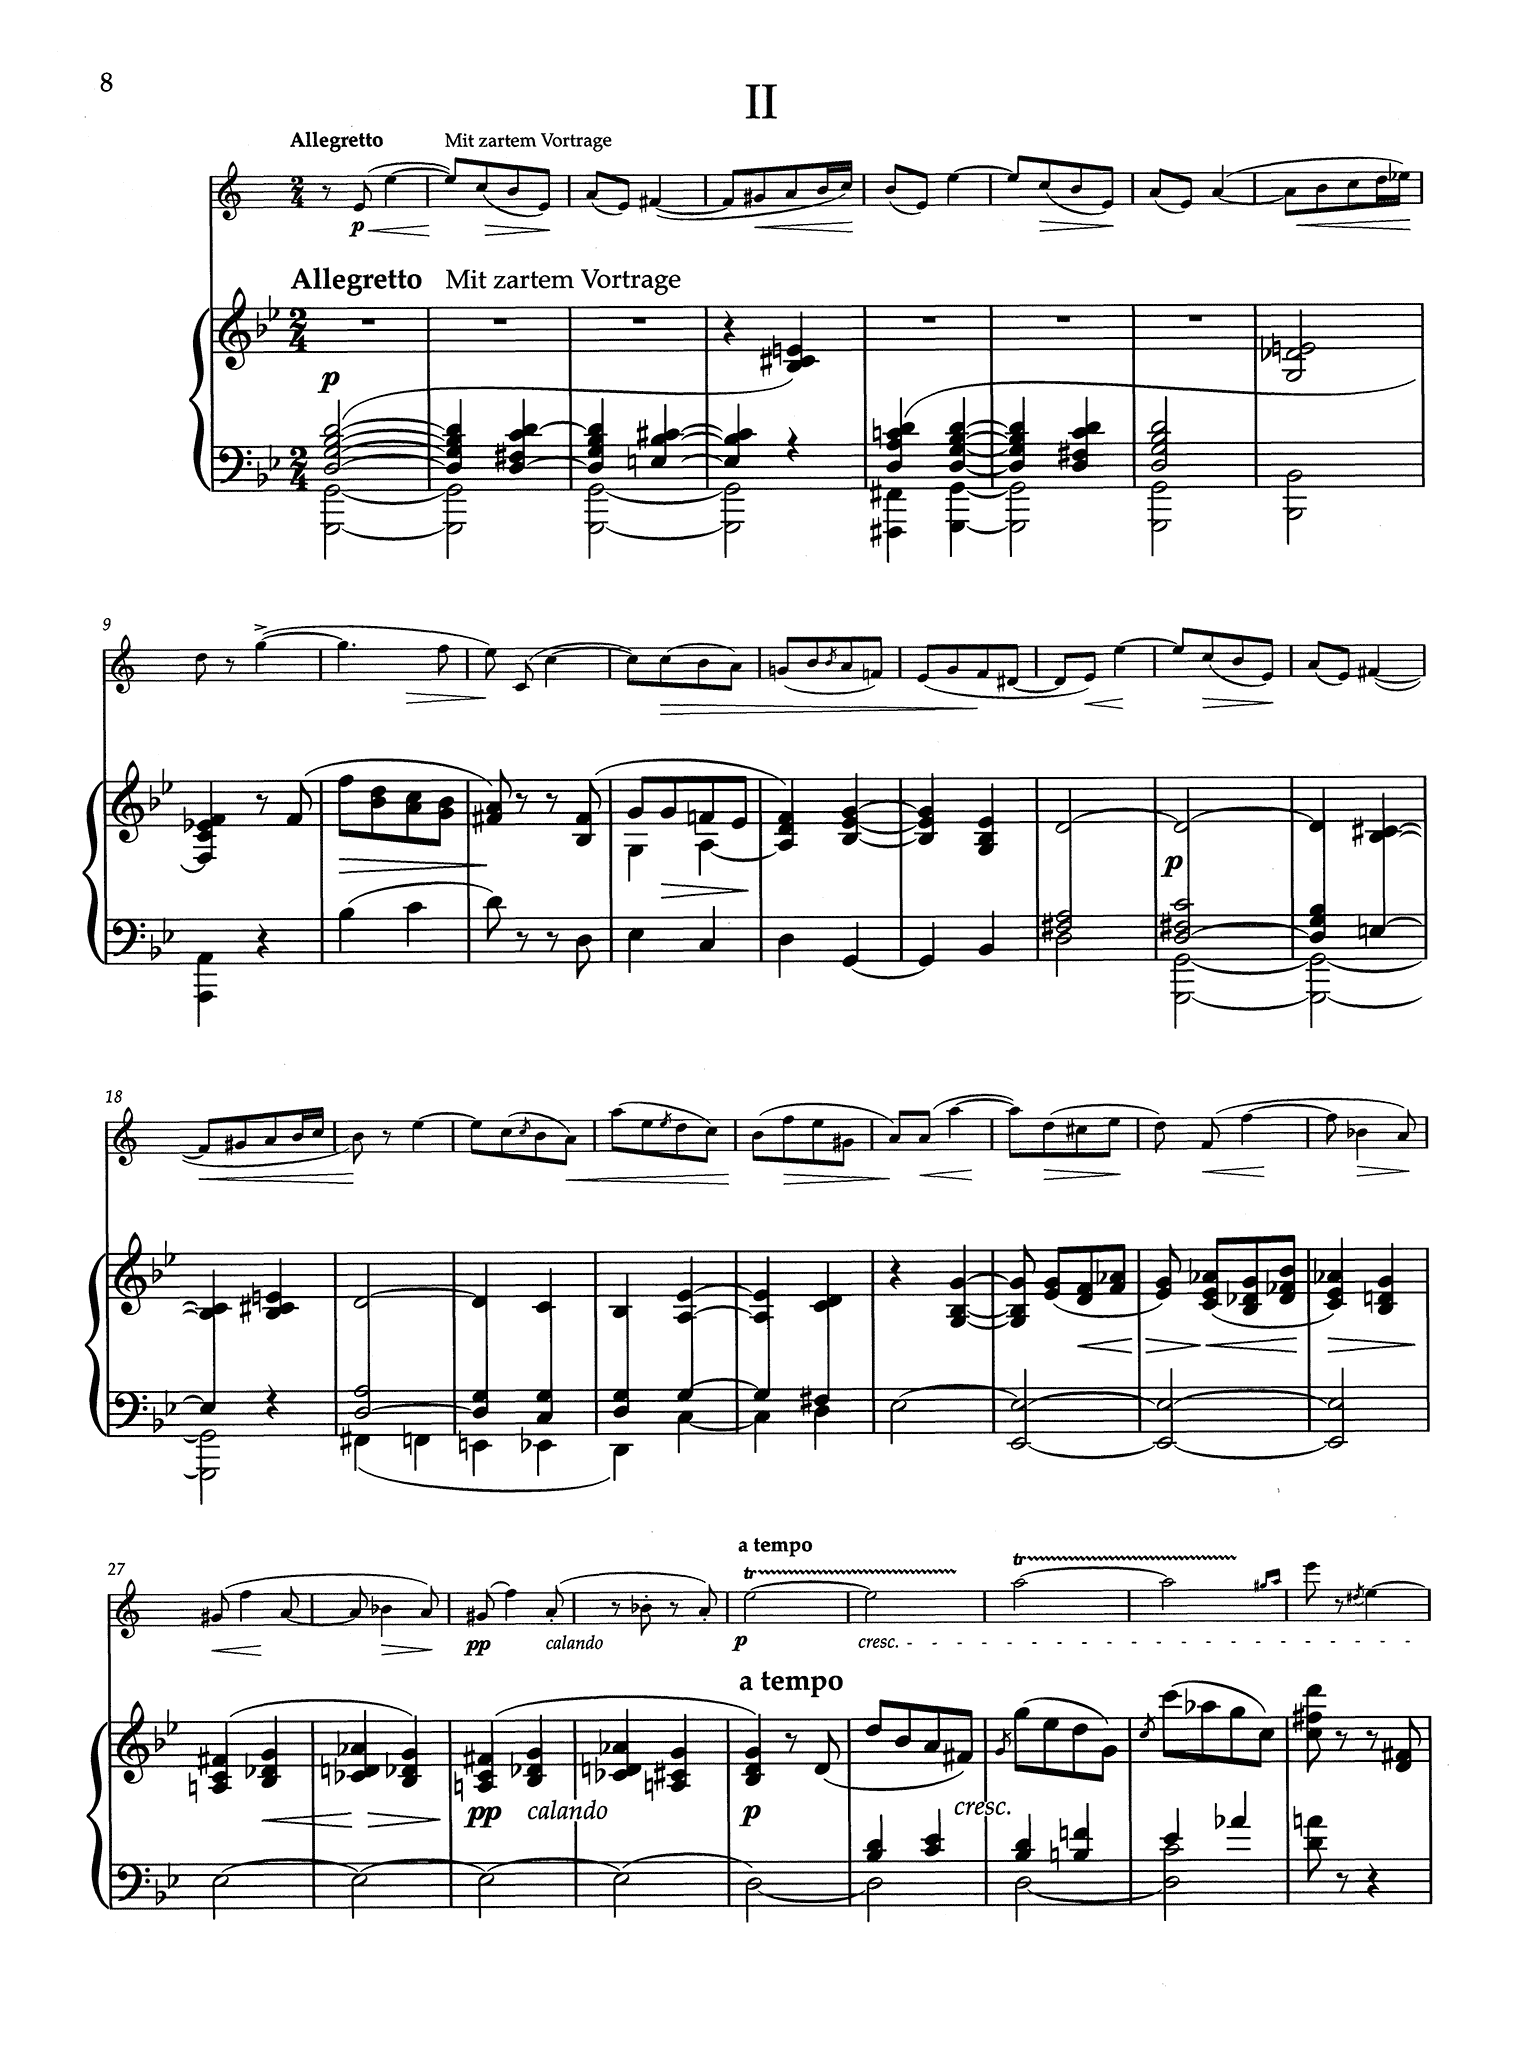 Clara Schumann Drei Romanzen, Op. 22 clarinet arrangement - Movement 2